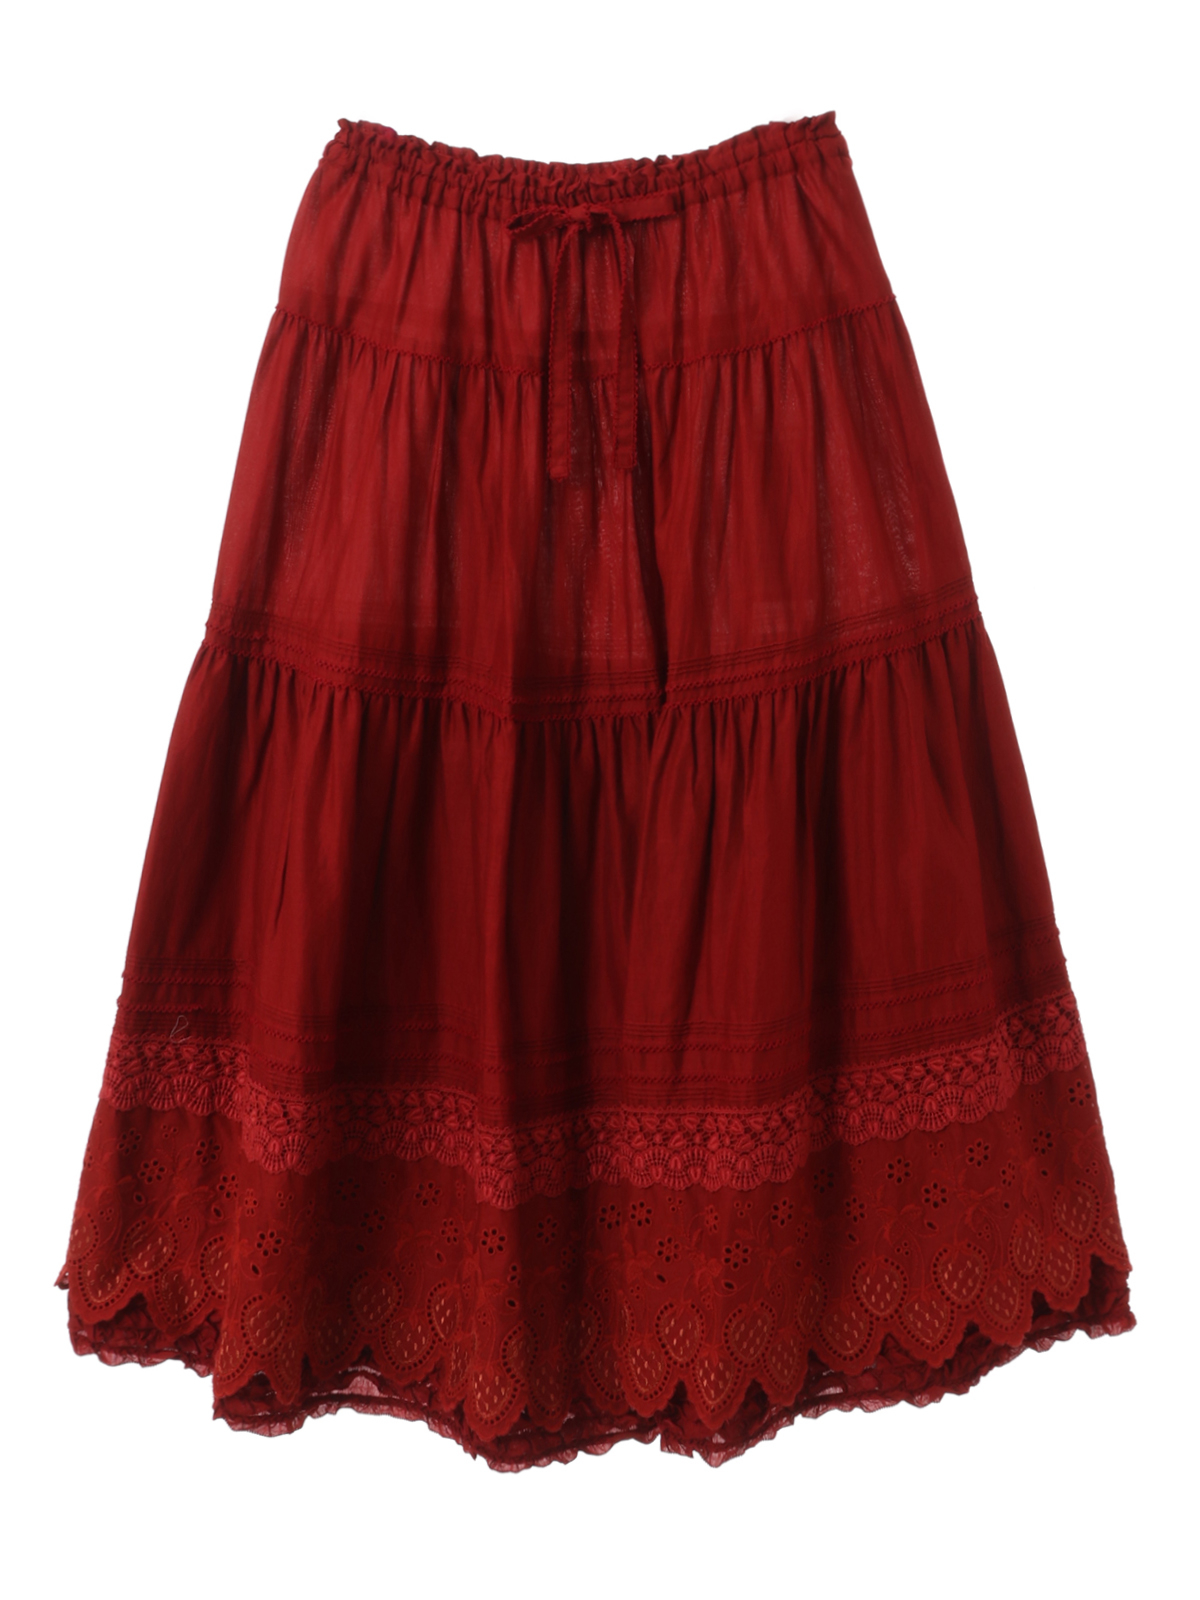 PINKHOUSE カーゴスカート 赤 - ロングスカート